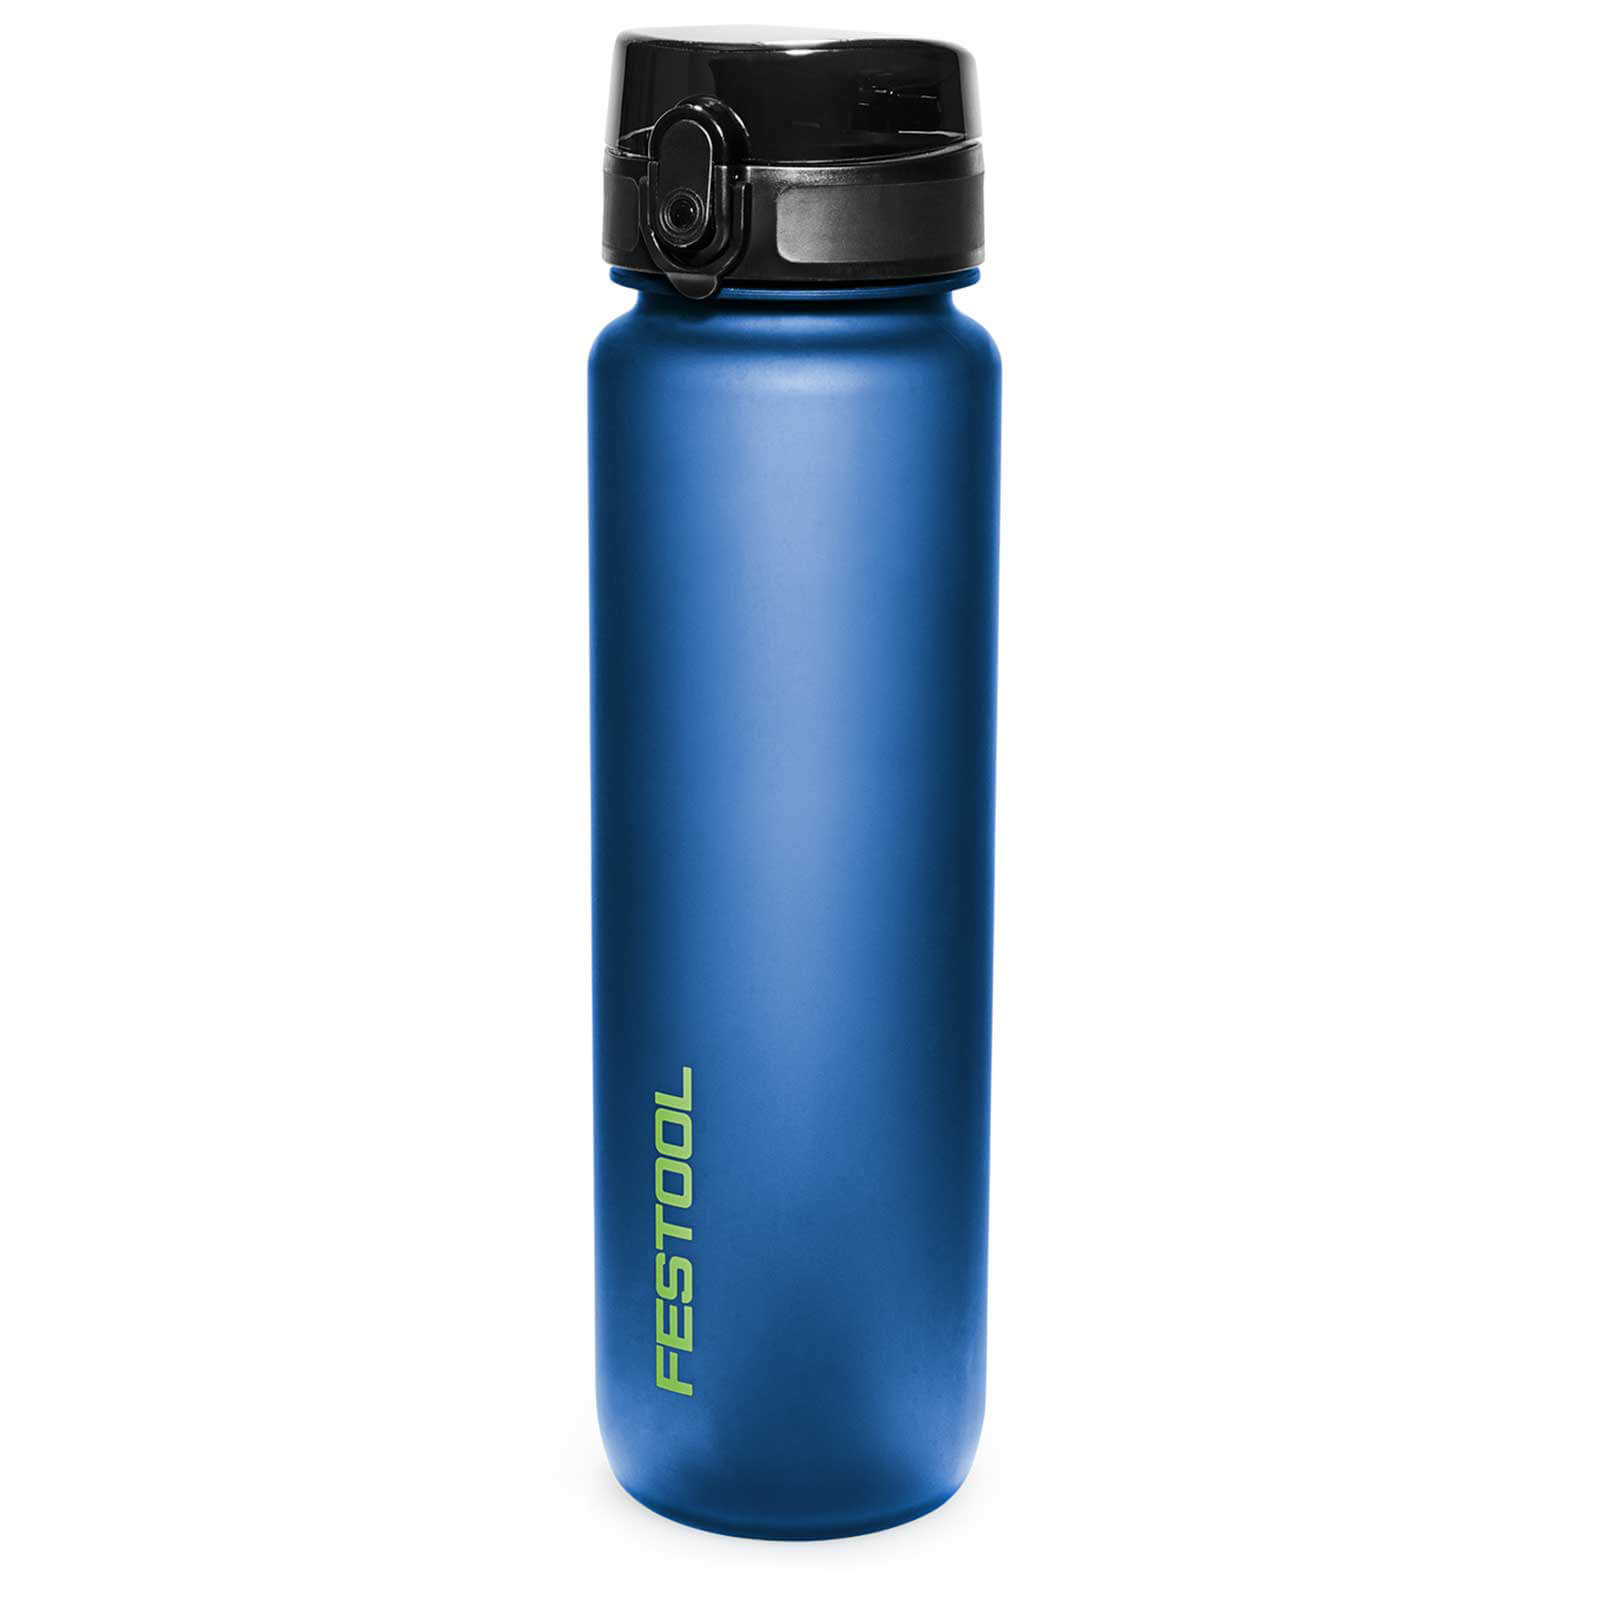 Festool Fan TFL-FT1 1L Water Drinks Bottle | Travel & Outdoors> Drinks Bottles & Flasks > Drinks Bottles | Review & Compare on 4utoday